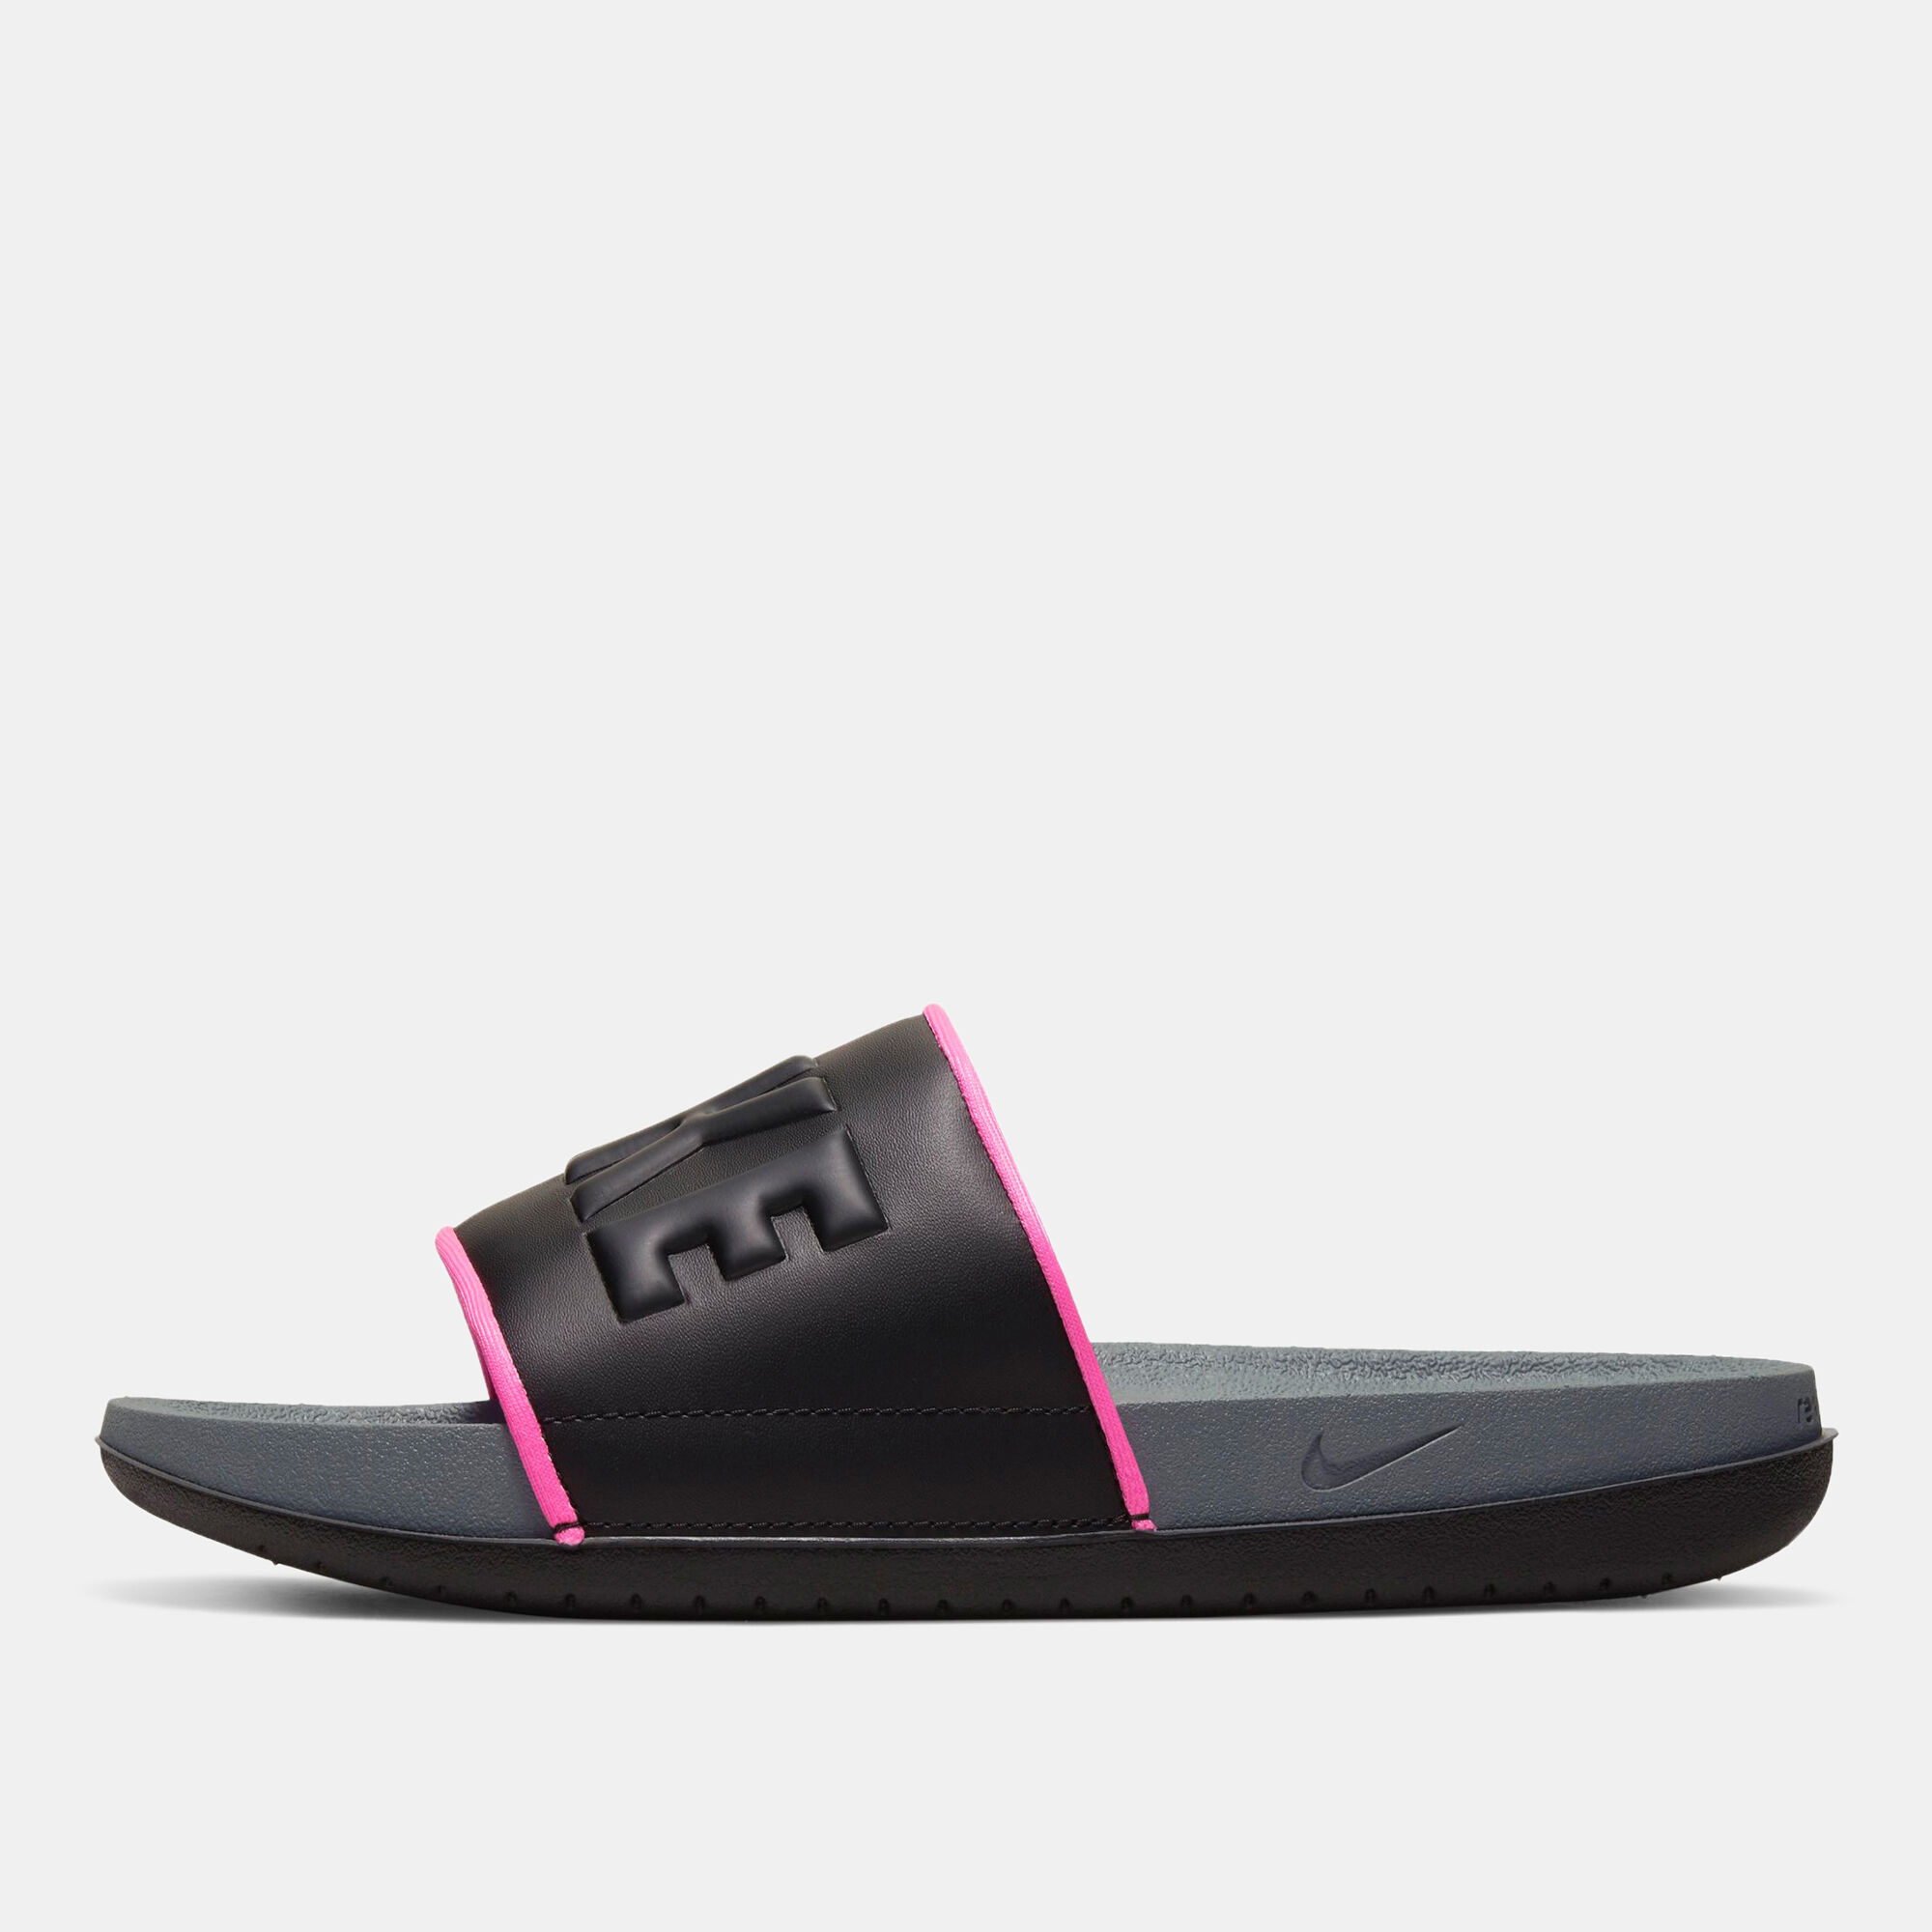 nike women's offcourt slide sandal